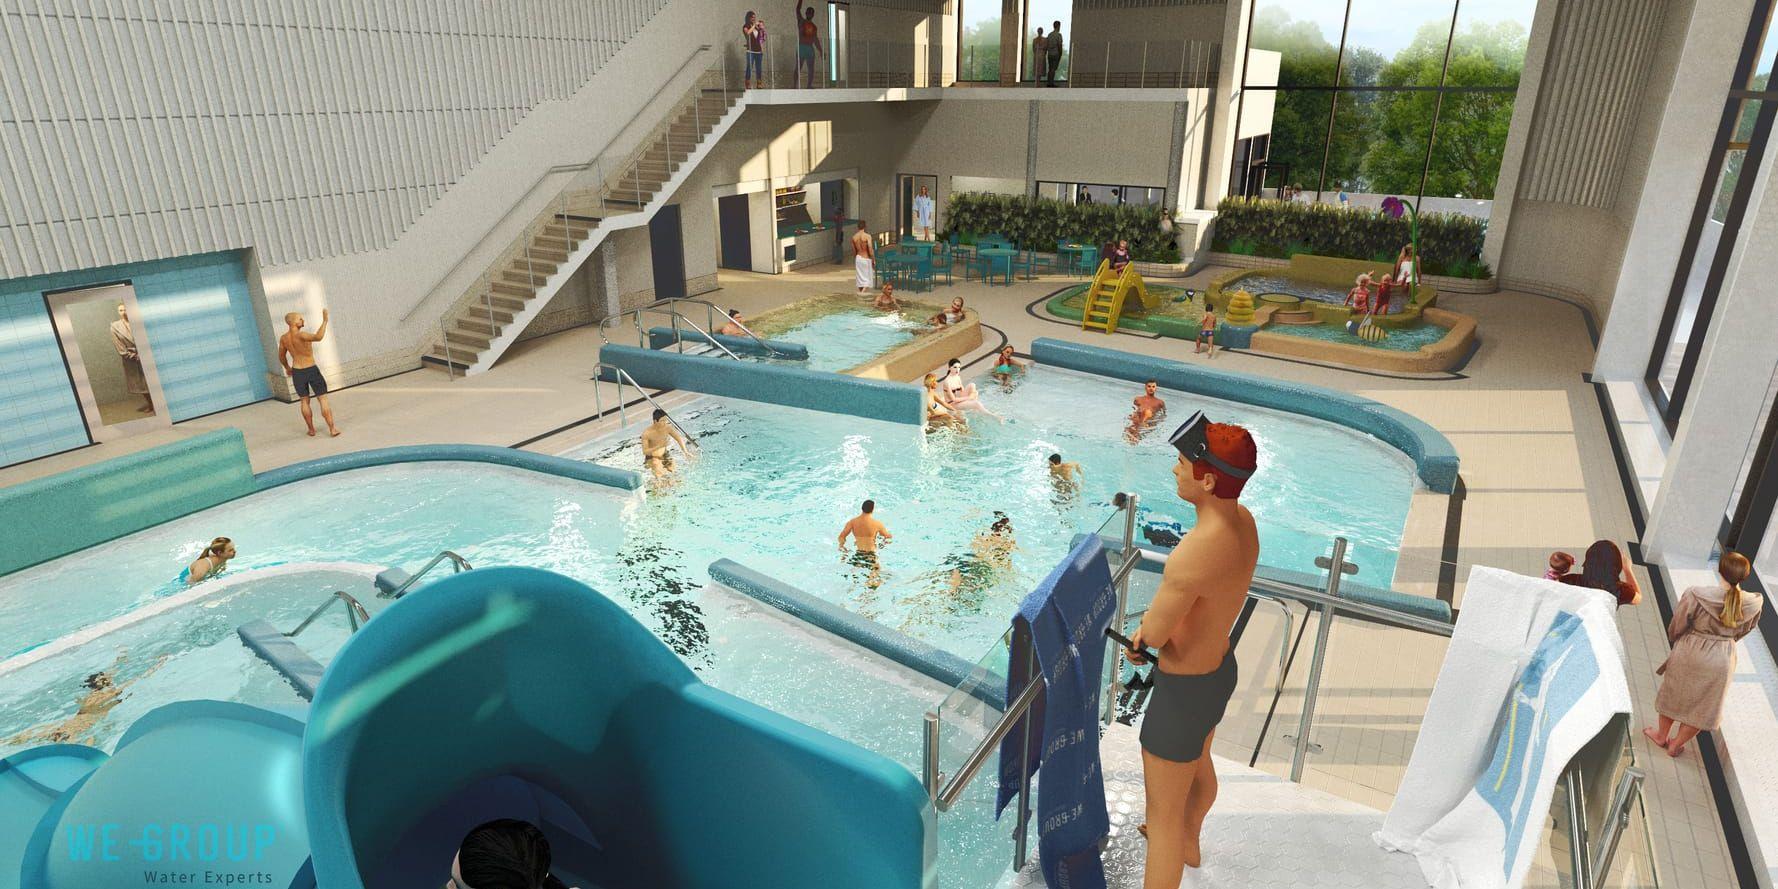 Det nya badhuset i Kungsbacka ska invigas nästa vår. Bild: We group